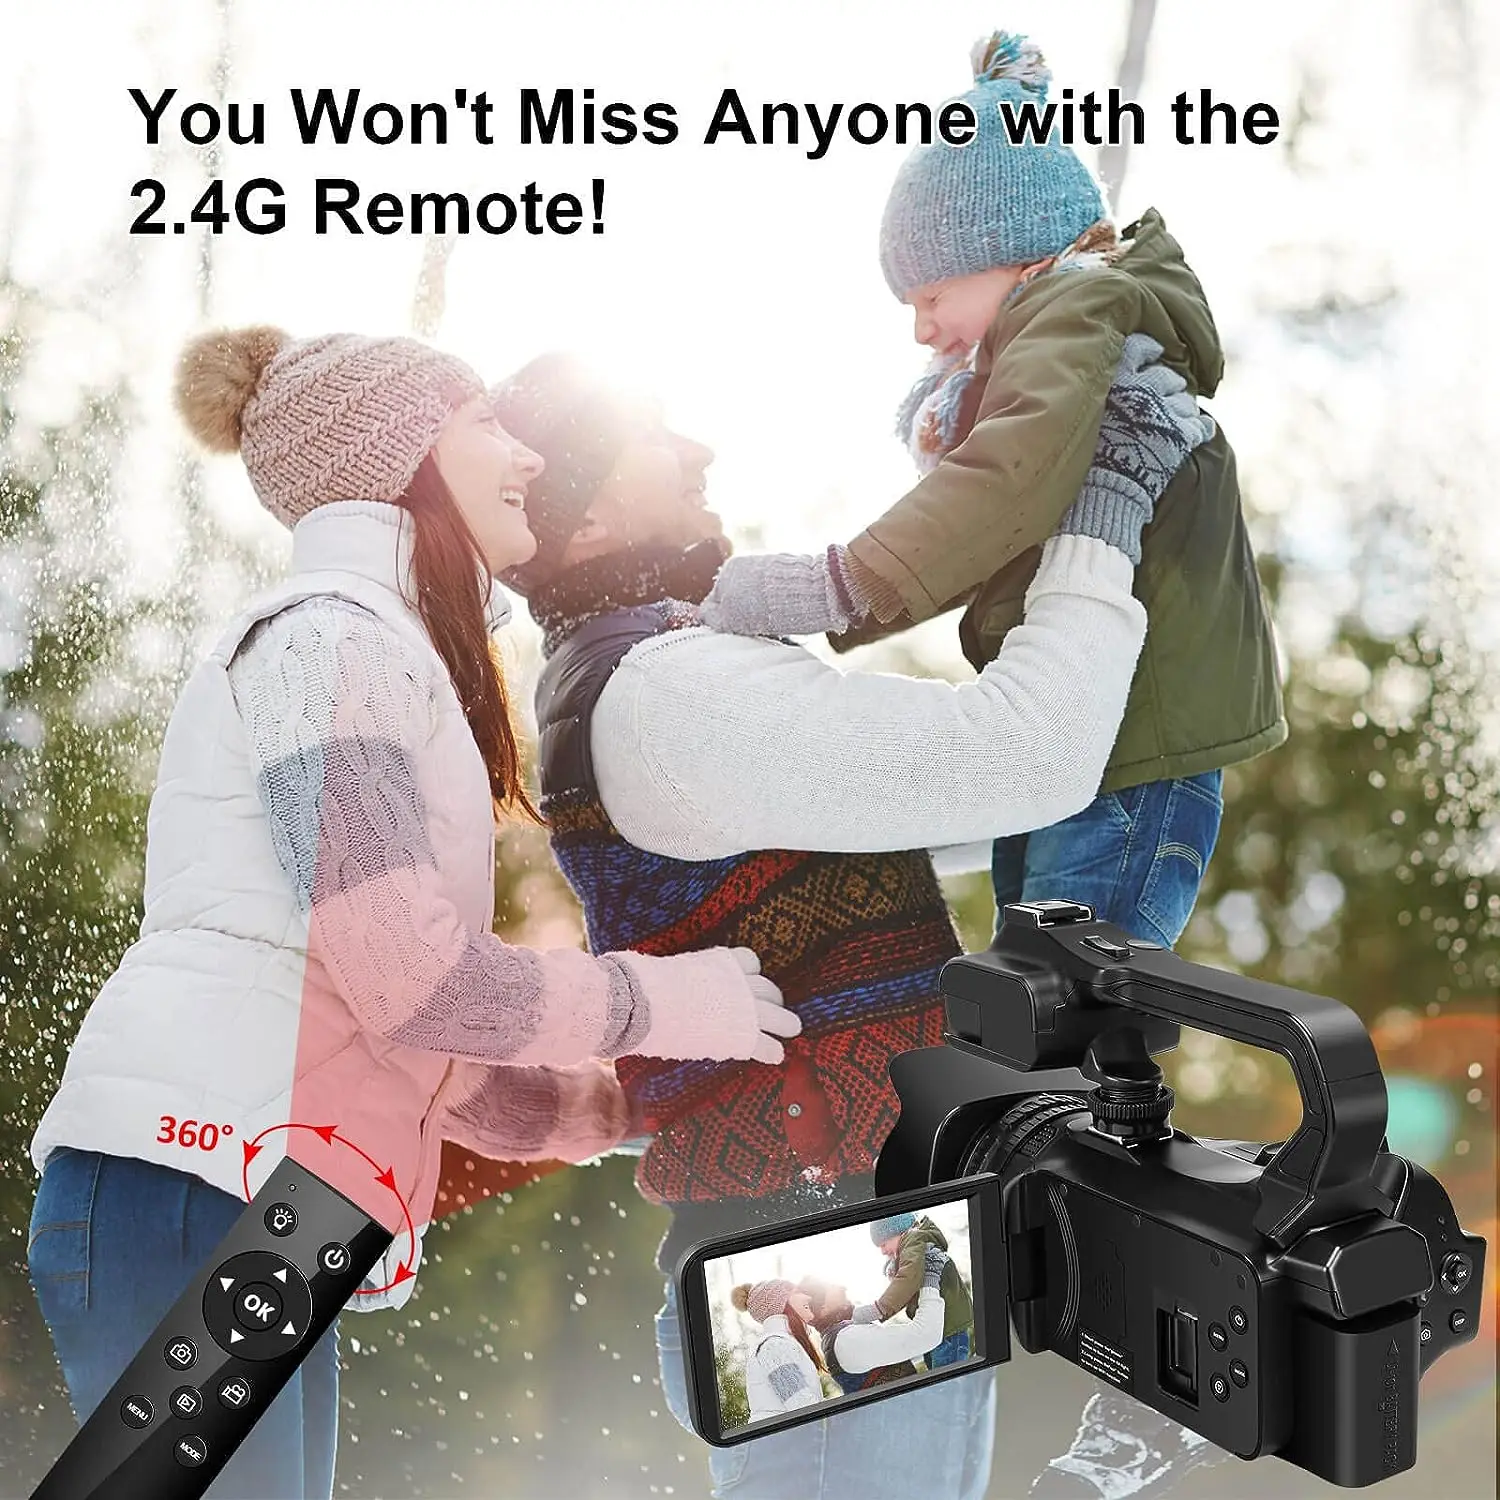 Caméra ultra HD 4K avec zoom numérique 18X, caméscope numérique 64mp, écran  tactile rotatif de 4,0 pouces, microphone, télécommande, carte SD 64gb,  deux batteries (noir) - K&F Concept